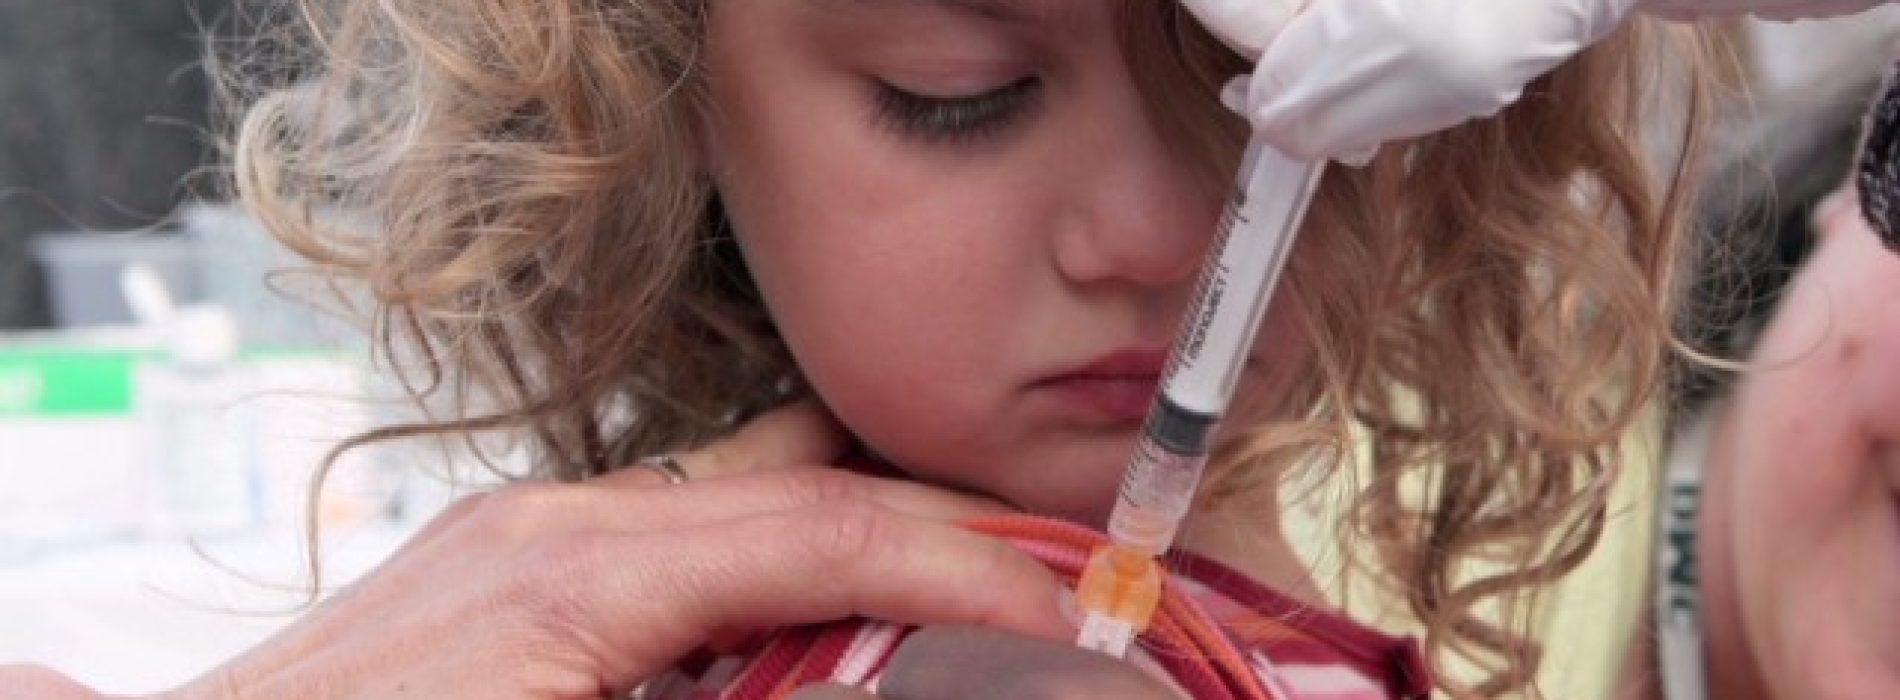 Uit onderzoeksgegevens blijkt dat gevaccineerde kinderen tot drie keer langer uitscheiden dan niet-gevaccineerde kinderen